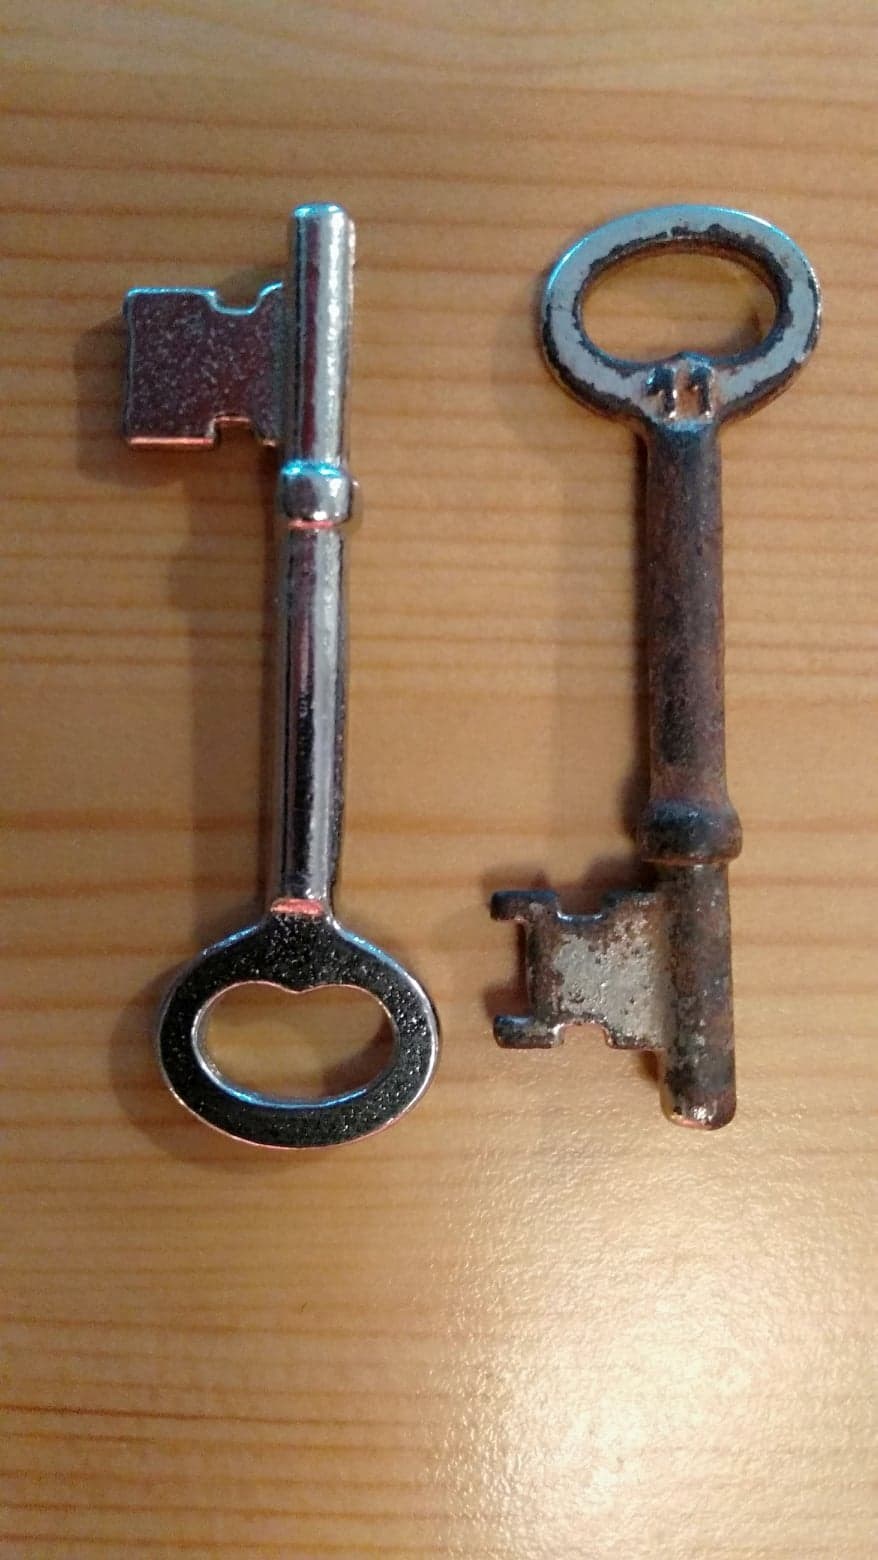 Nøkkel til dør fra 1933 er forsvunnet -  mulig å ta ut låsen og gå til låsesmed? - Nøkler til dør fra 1933.jpg - Abelo